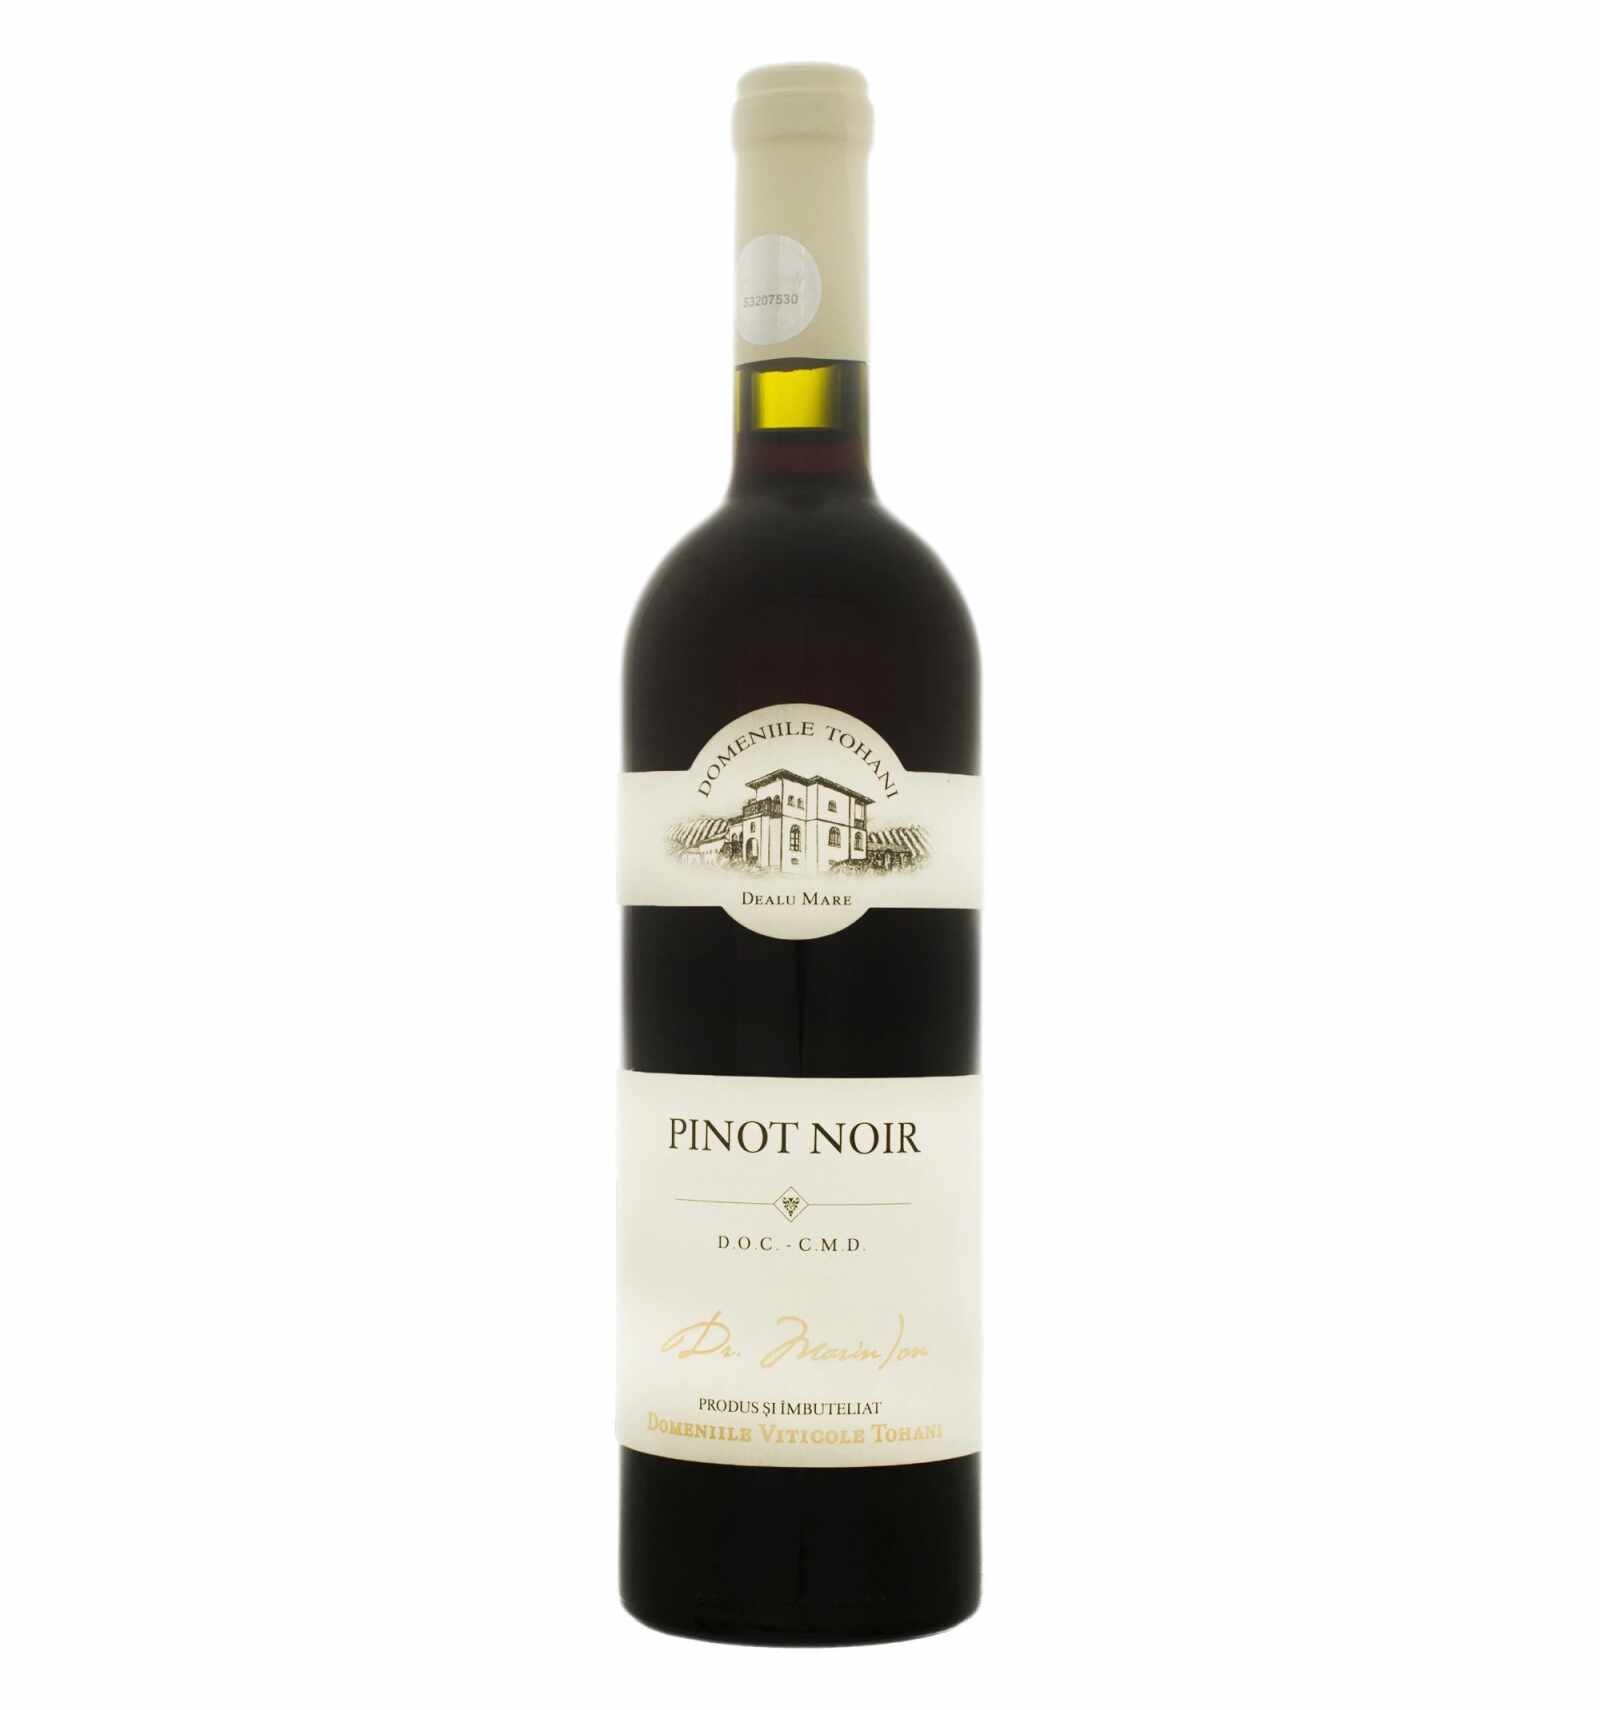 Vin rosu demidulce, Pinot Noir, Domeniile Tohani Dealu Mare, 0.75L, 12.5% alc., Romania